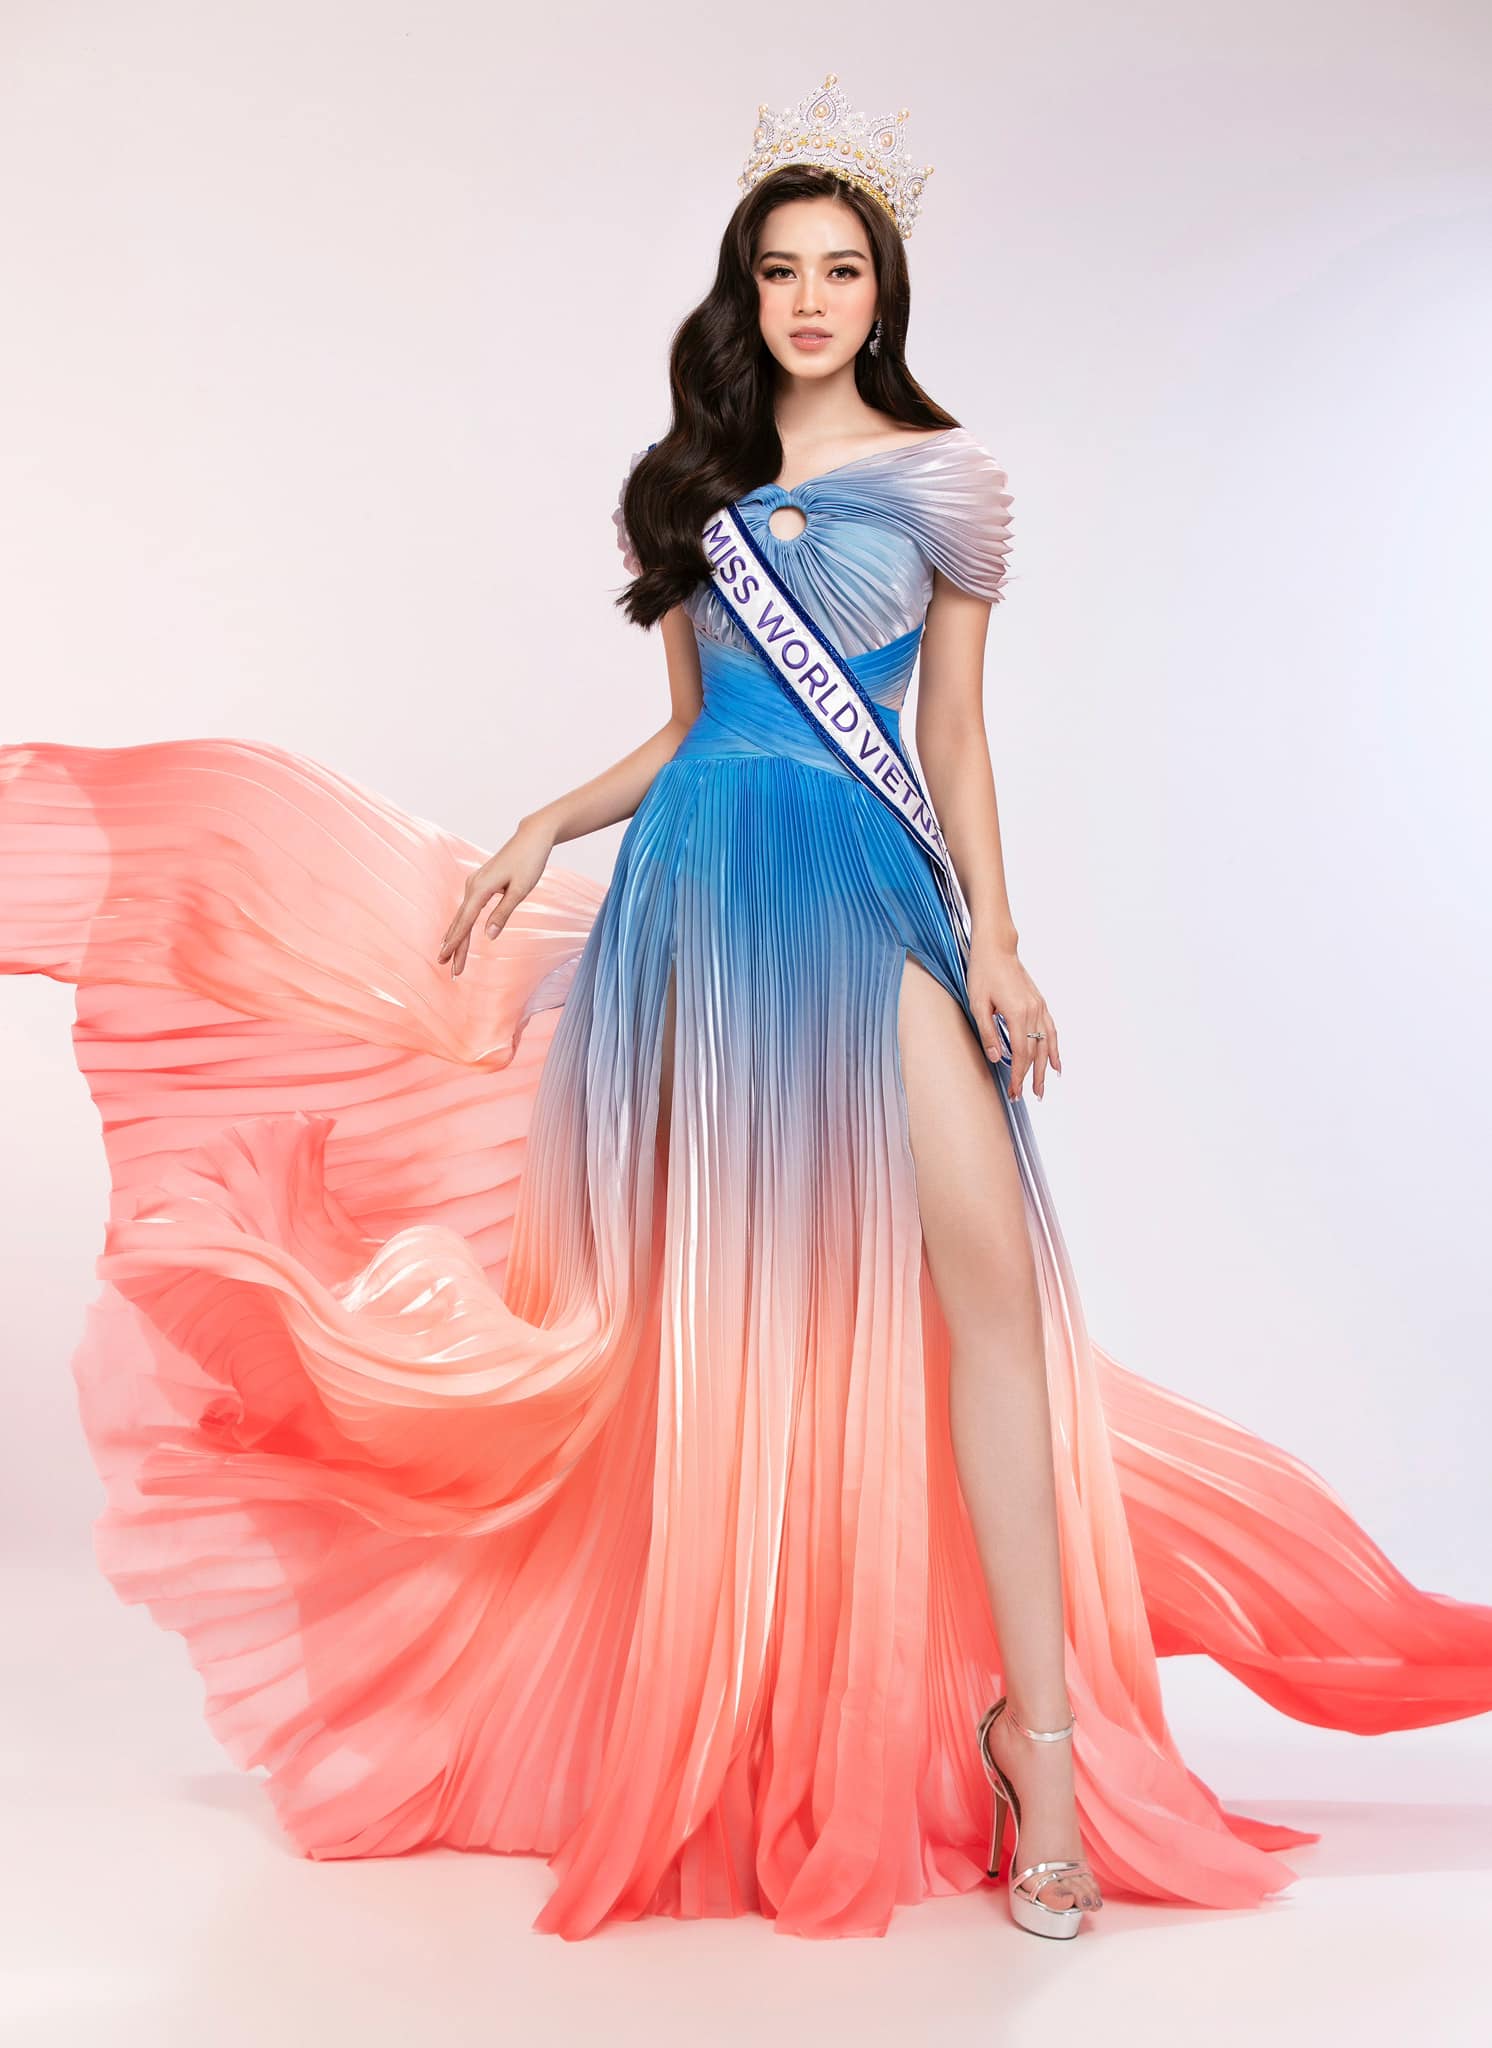 Hoa hậu Đỗ Thị Hà: “Tôi phấn đấu tiếp nối chuỗi intop tại Miss World 2021 khi đeo sash Việt Nam” - Ảnh 1.